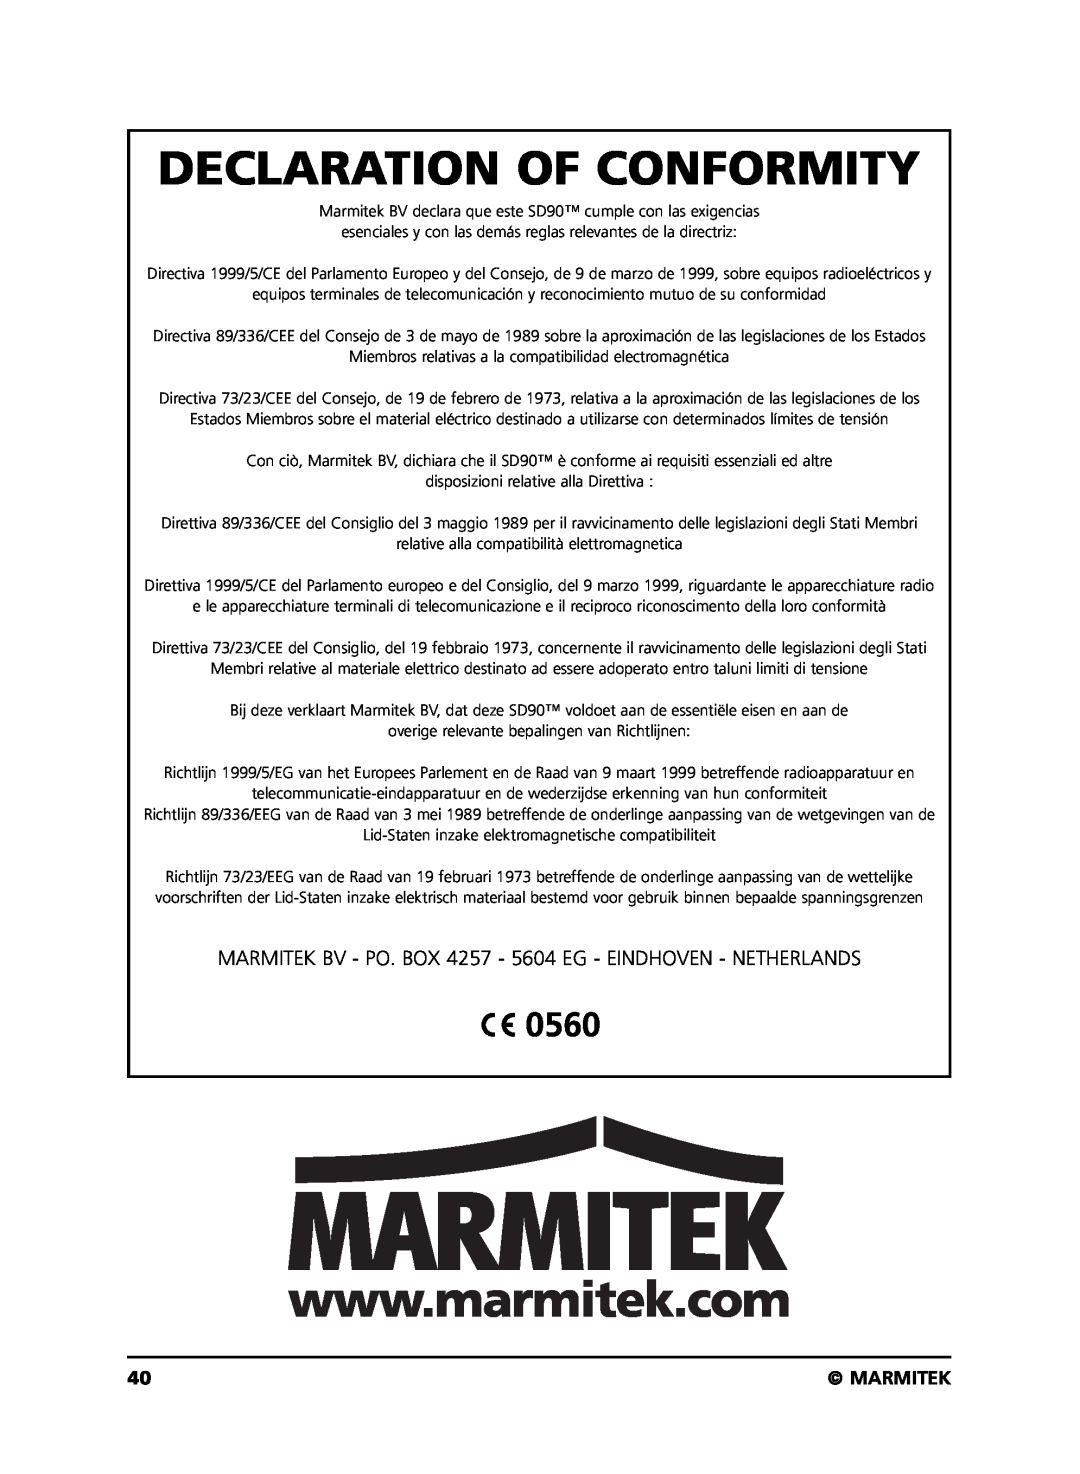 Marmitek SD90 user manual Declaration Of Conformity, 0560, Marmitek 